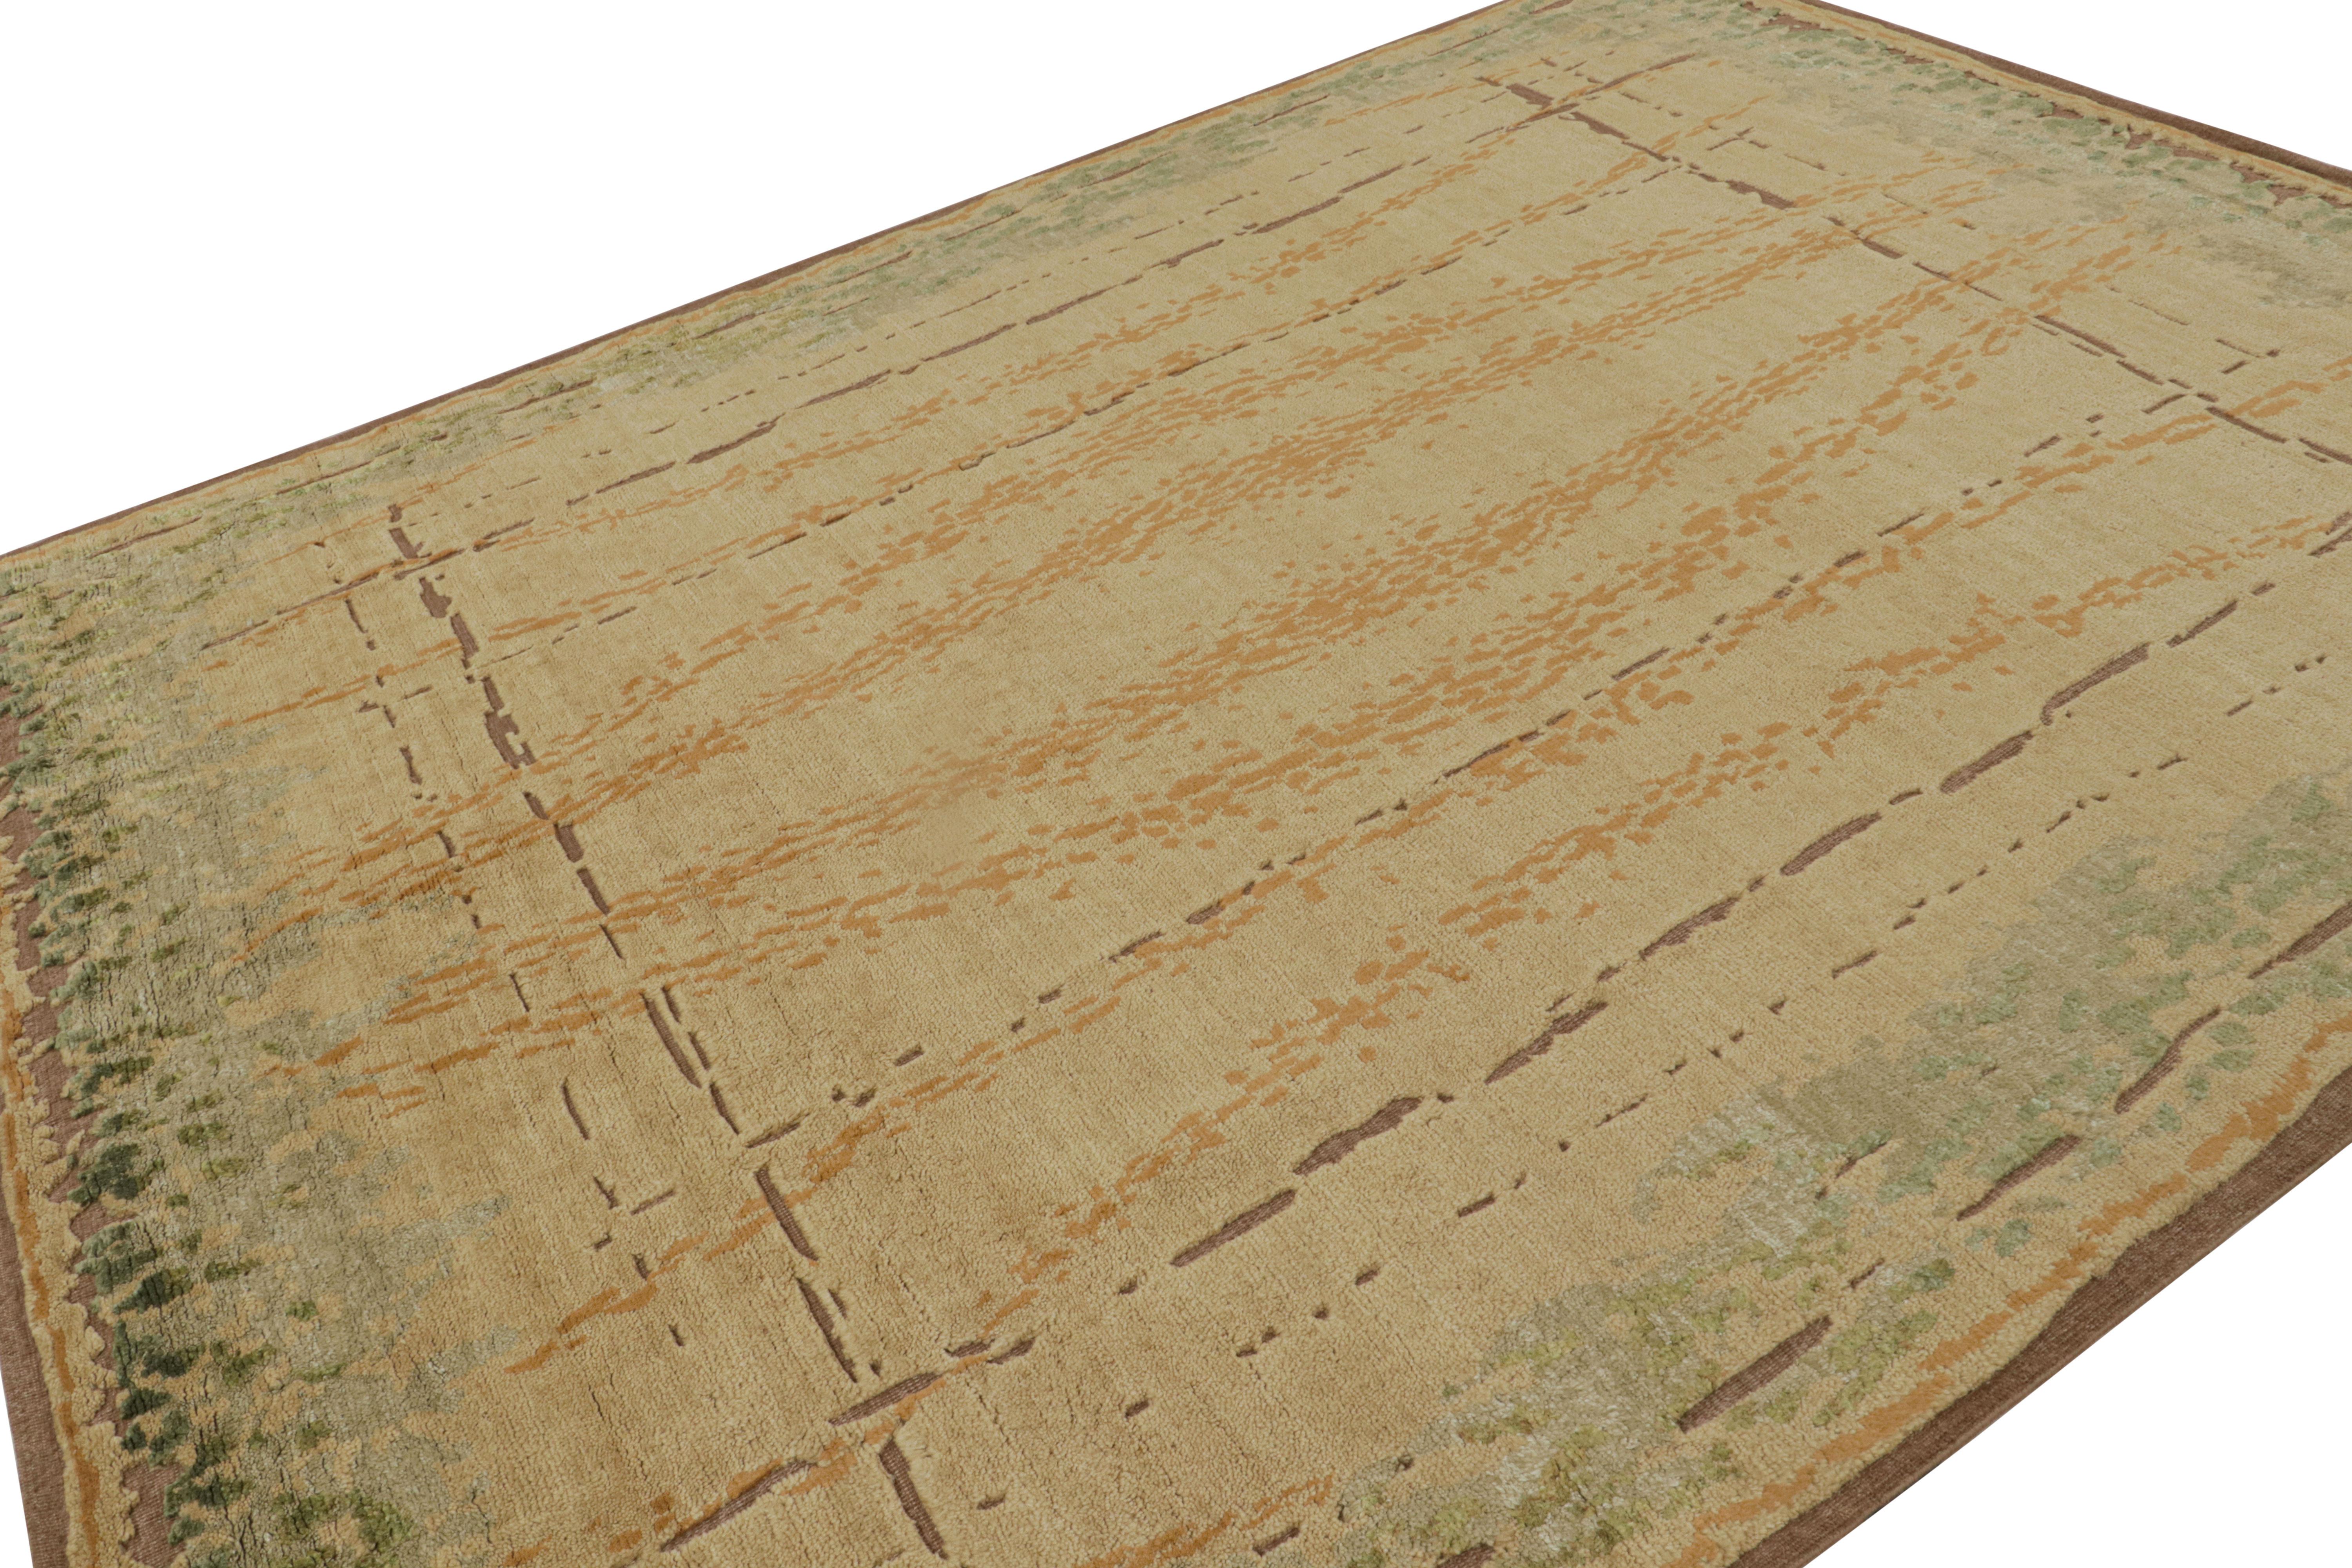 Noué à la main en laine, ce tapis moderne 9x11 de Rug & Kilim est un nouvel ajout à leur ligne de tapis Art déco français.

Sur le Design : 

Les admirateurs de l'art peuvent noter dans cette pièce des éléments de la sensibilité Art déco minimaliste